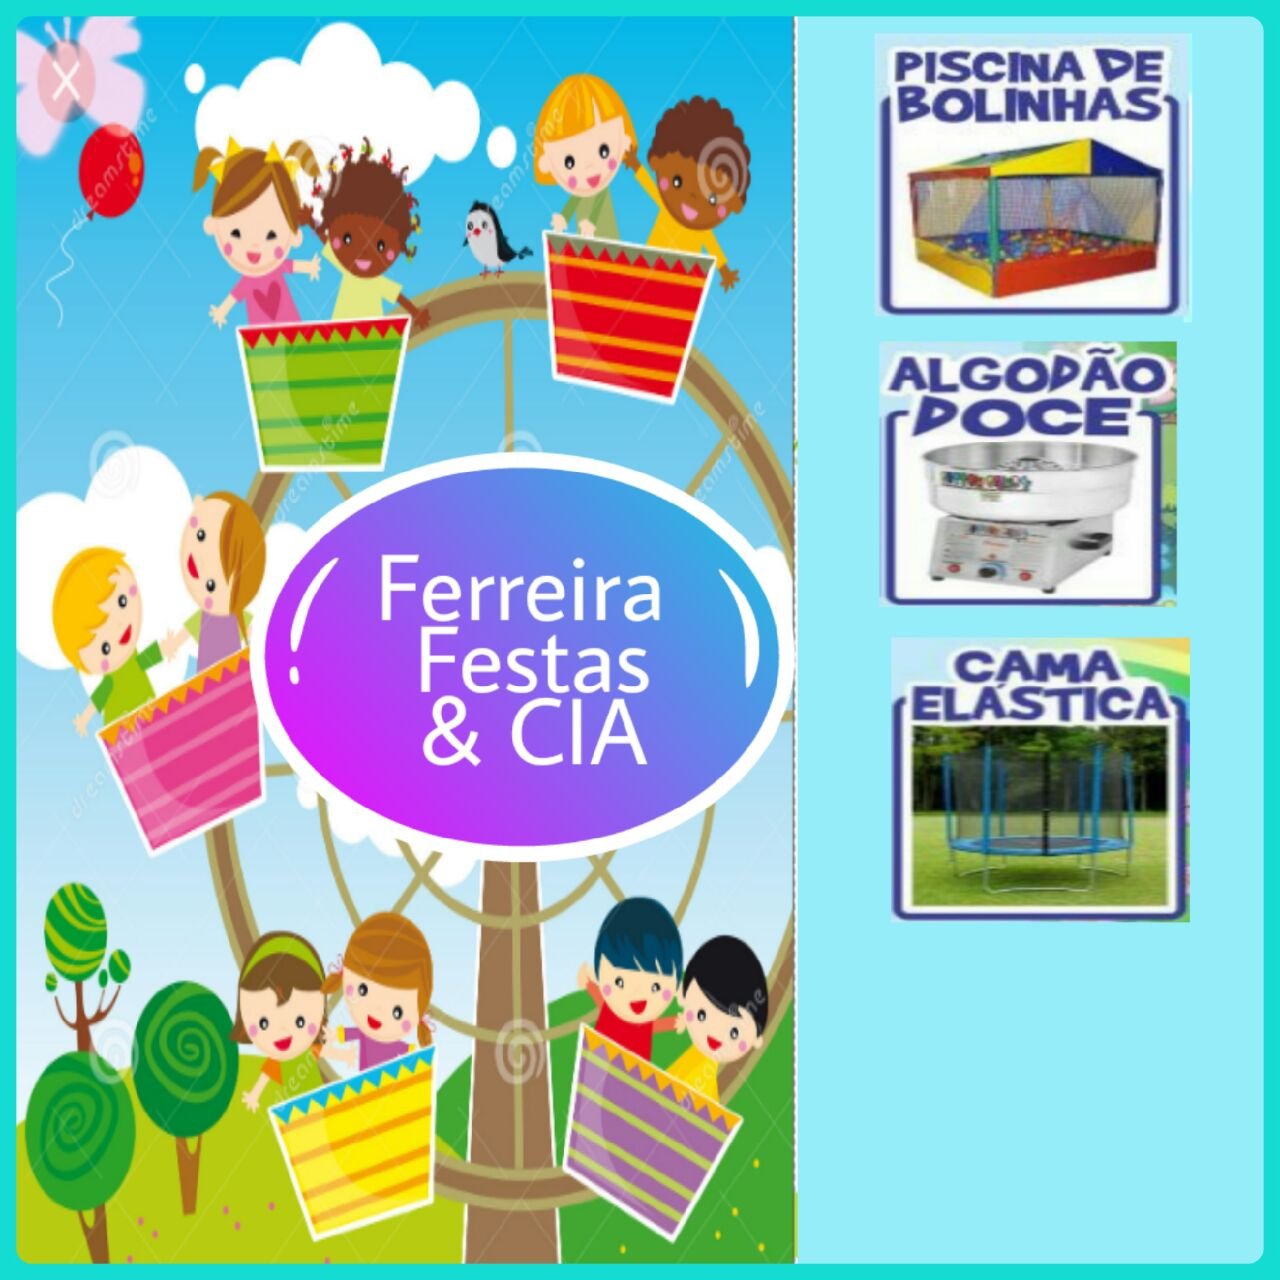 Ferreira Festa &CIA